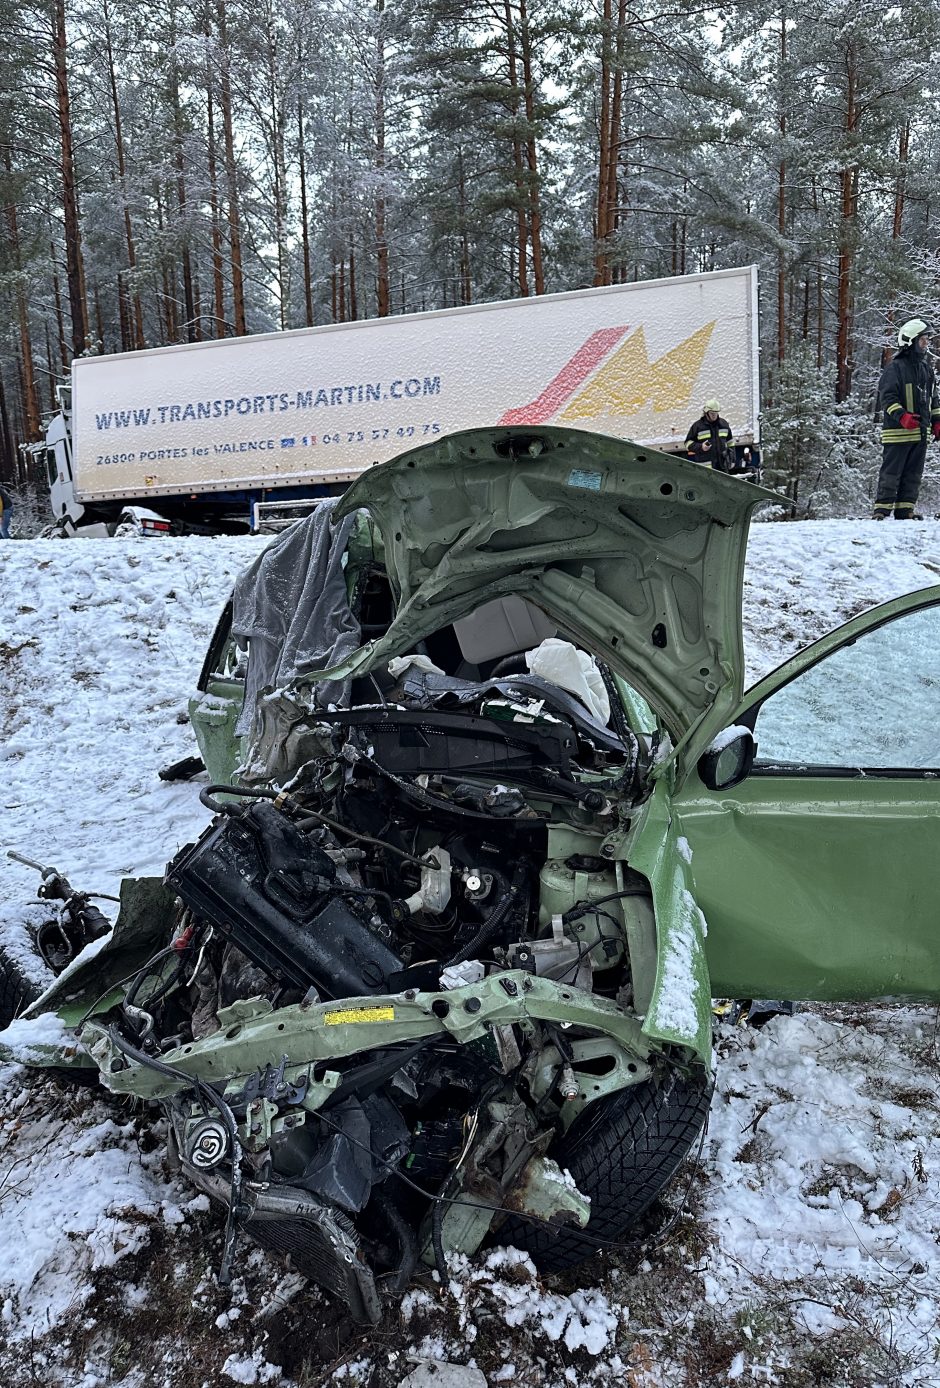 Tragiška avarija Varėnos rajone: susidūrus vilkikui ir lengvajam automobiliui, žuvo moteris